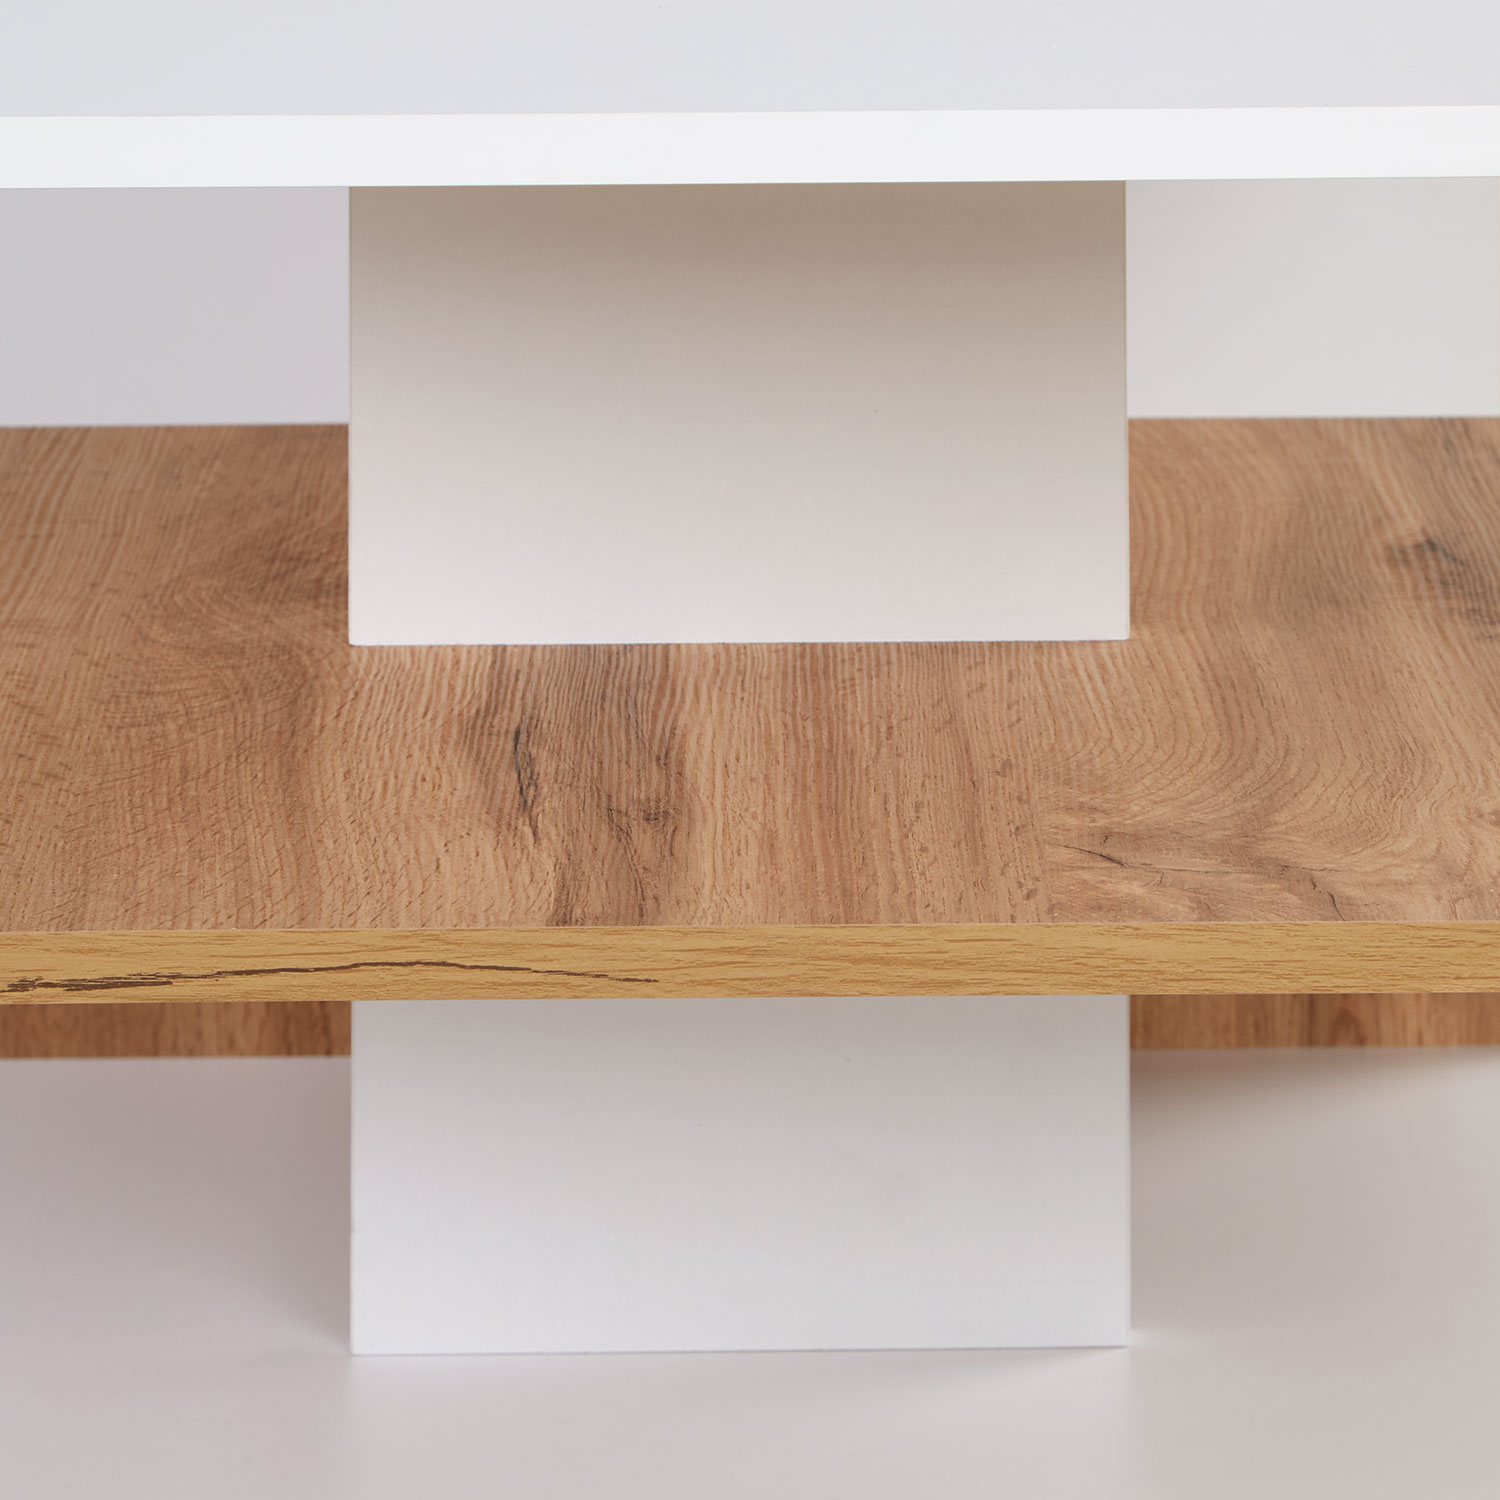 Couchtisch 90x50 cm Sofatisch Weiß Holz Eiche Tisch Beistelltisch Modern Holztisch Wohnzimmertisch